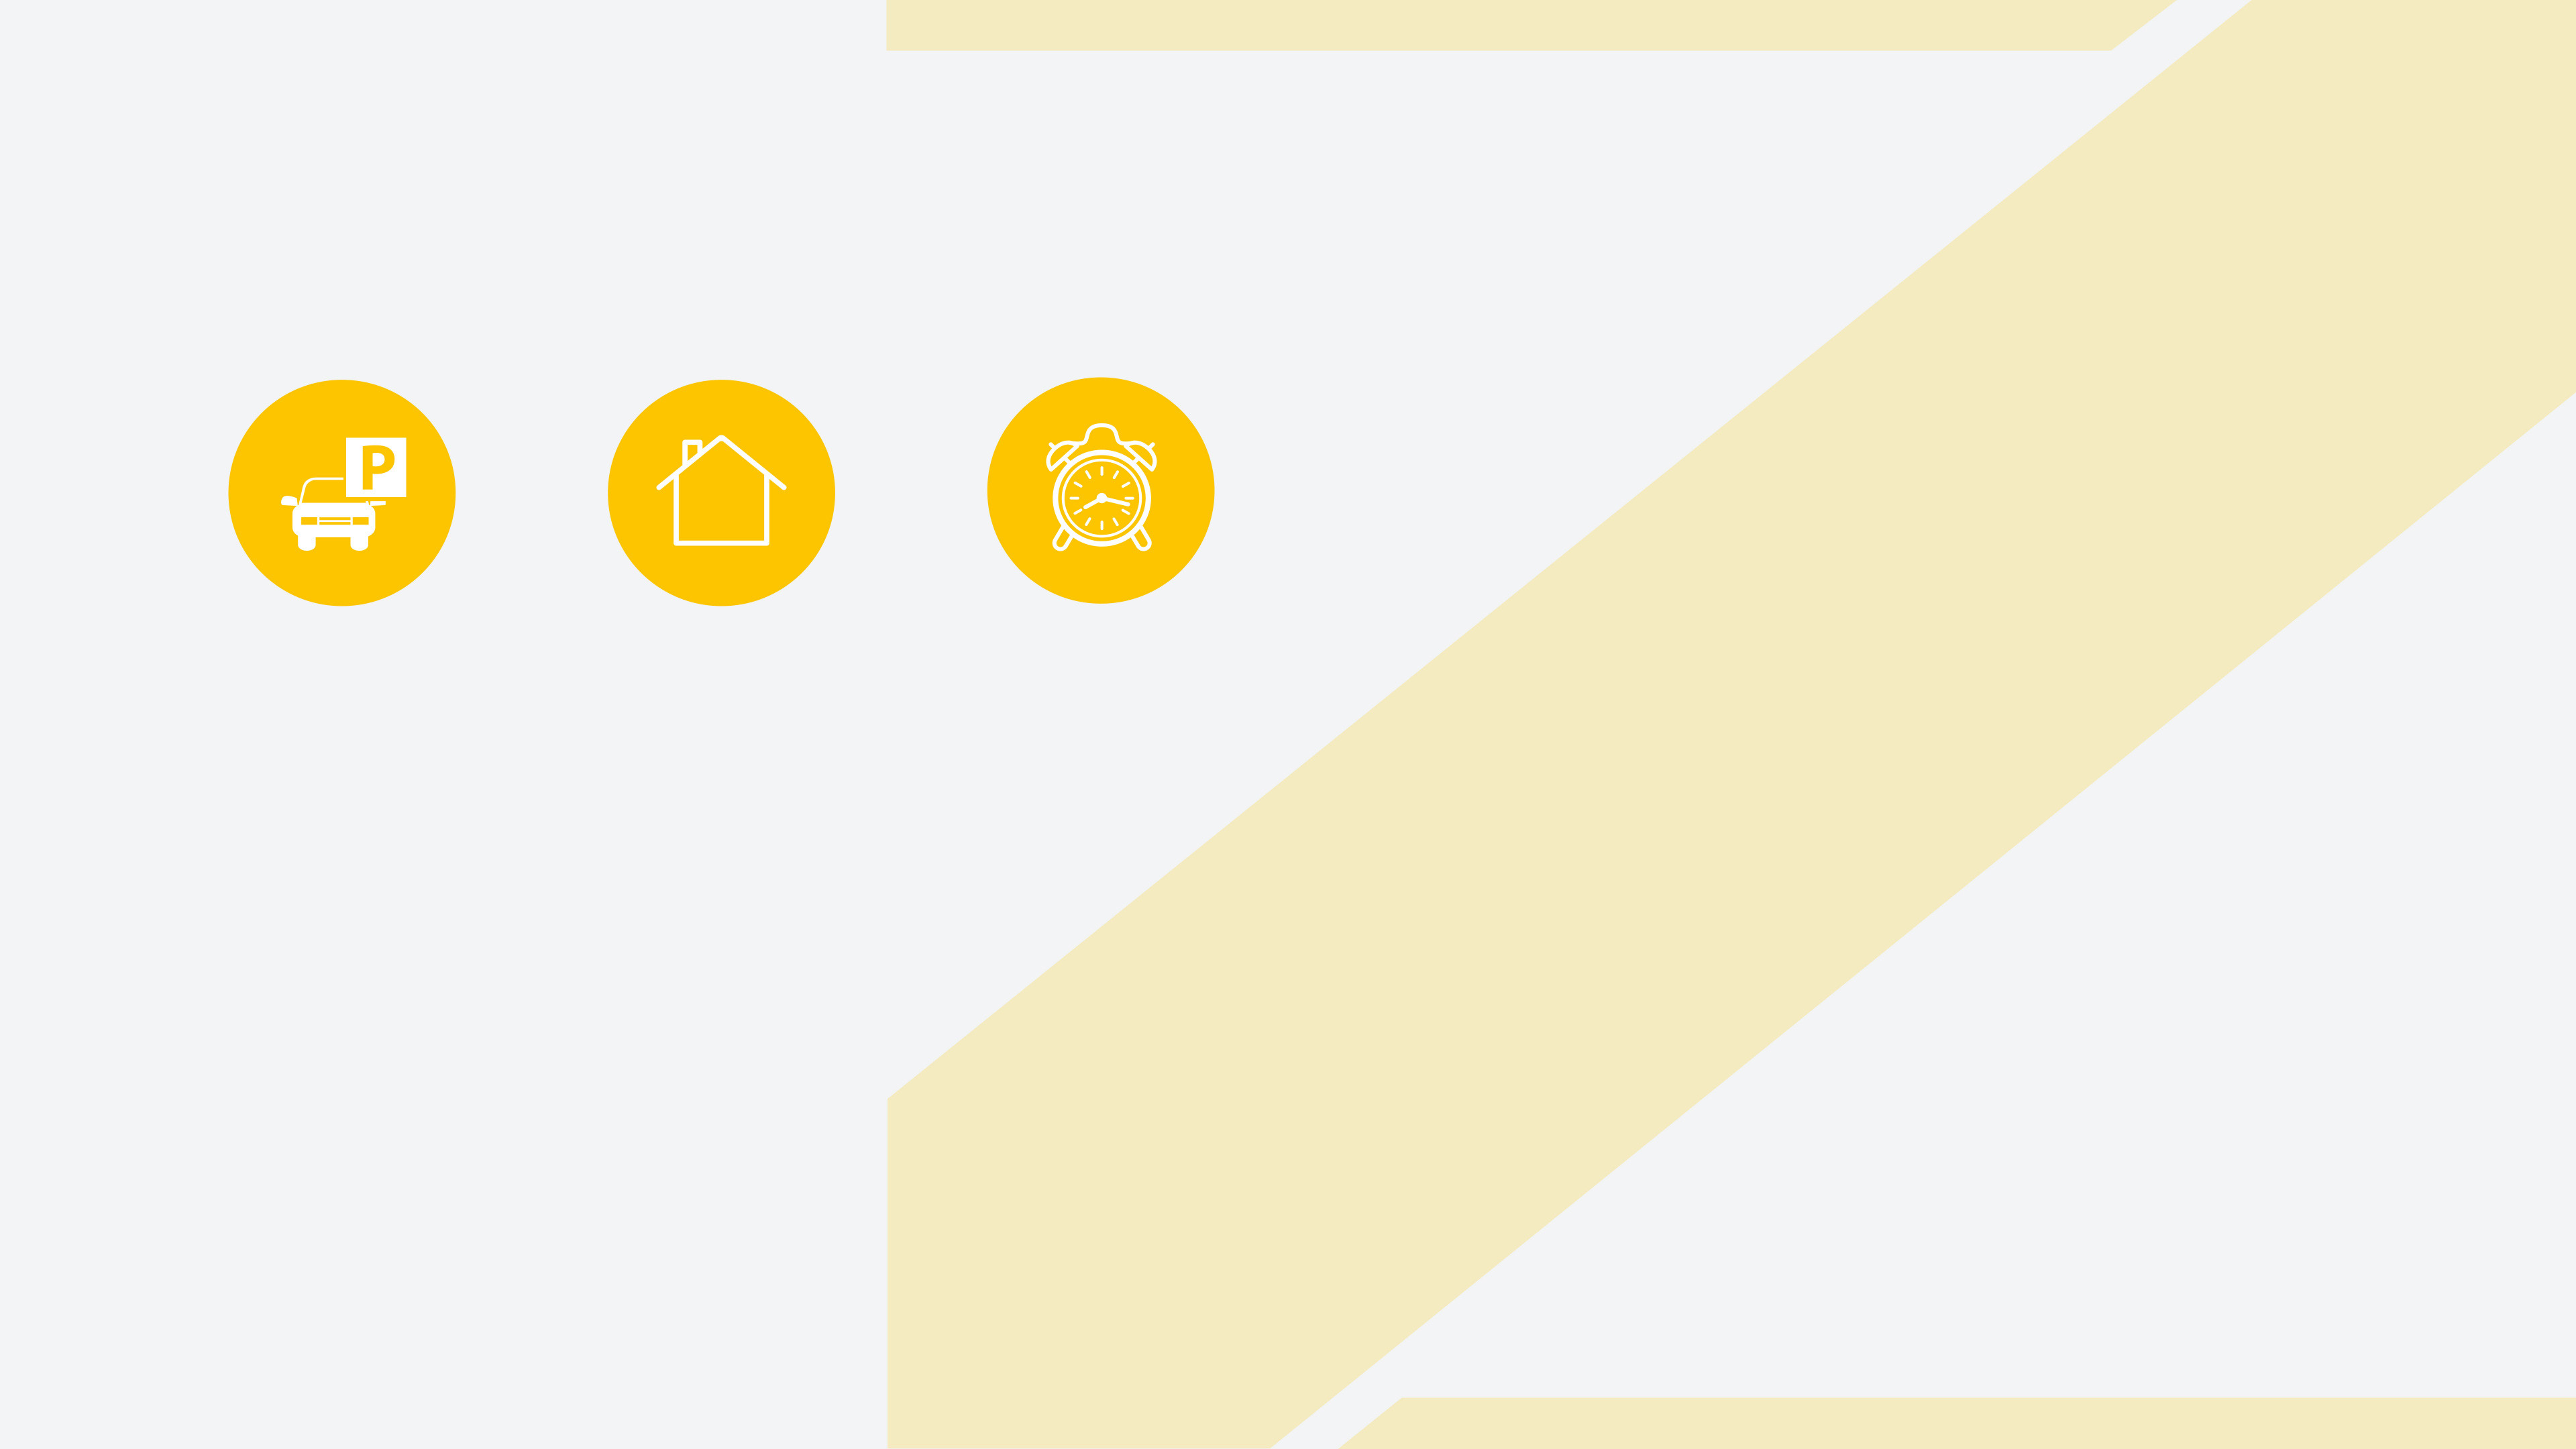 Gelbes Z und drei gelbe runde Icons: Auto, Haus und Wecker